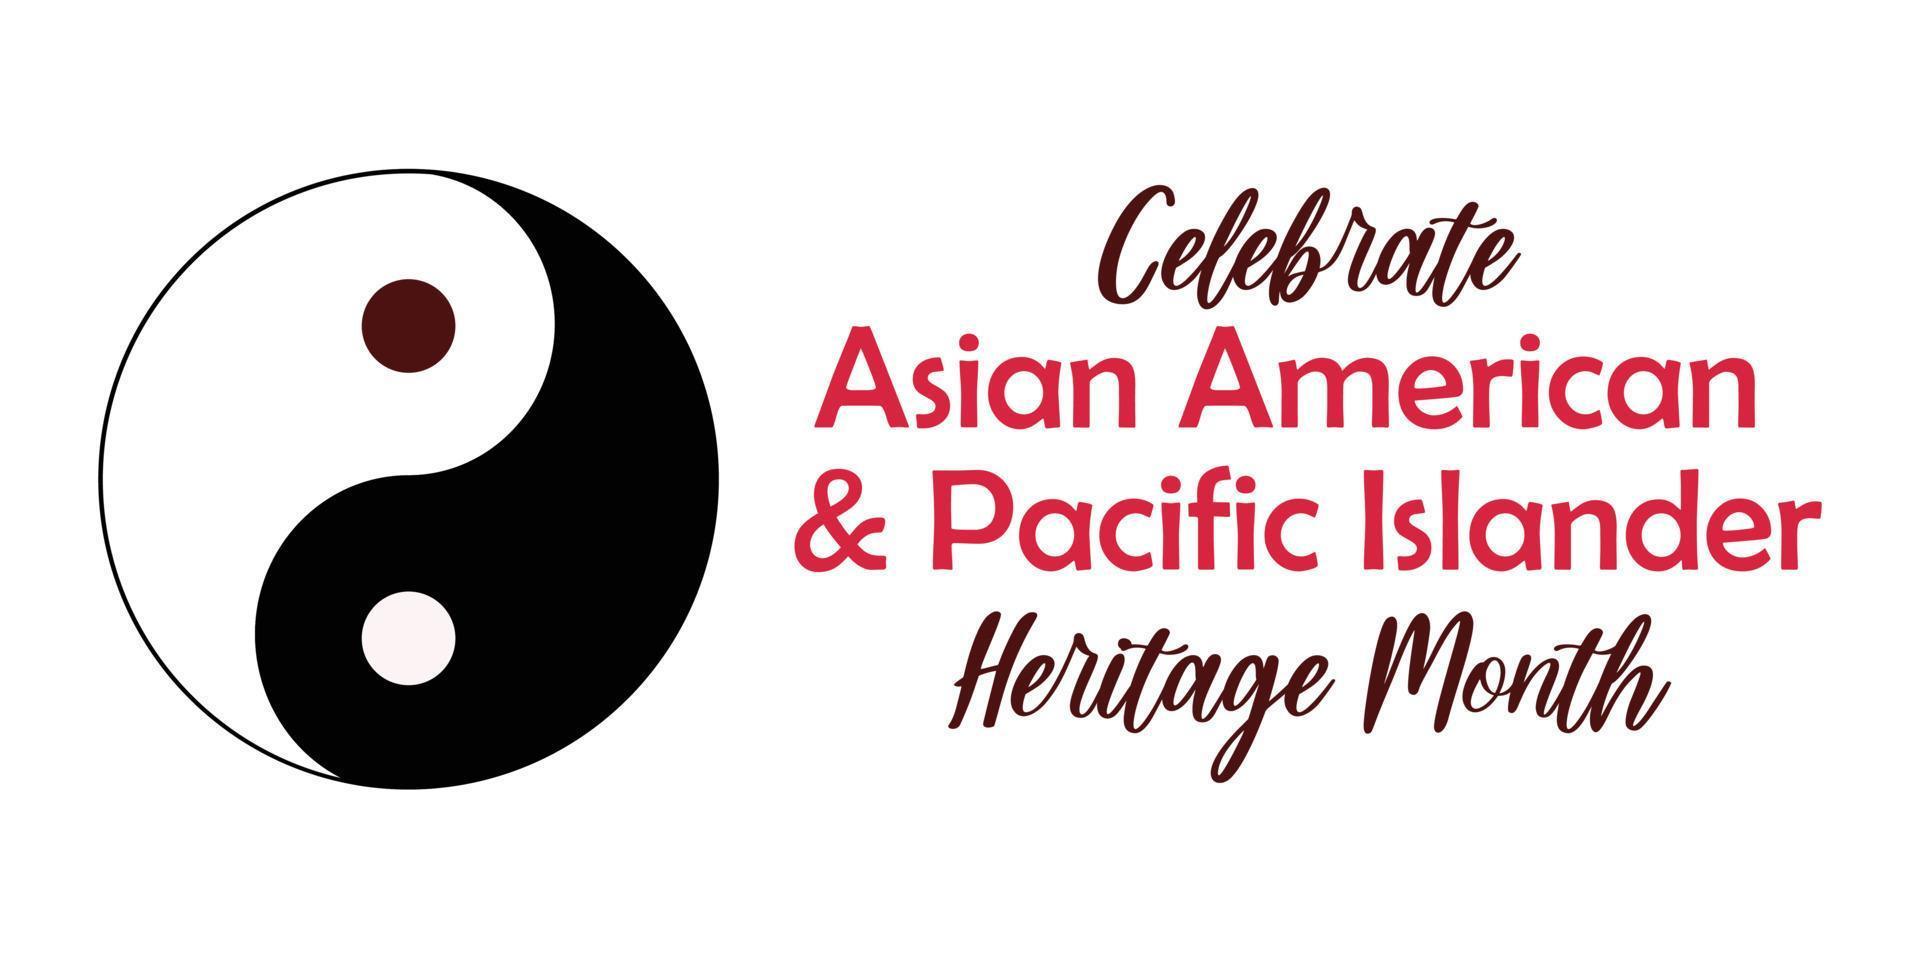 Aziatische Amerikaanse, Pacific Islander Heritage Month - viering in de VS. vectorillustratie met tekst, yin en yang synbol. wenskaart, spandoek. vector